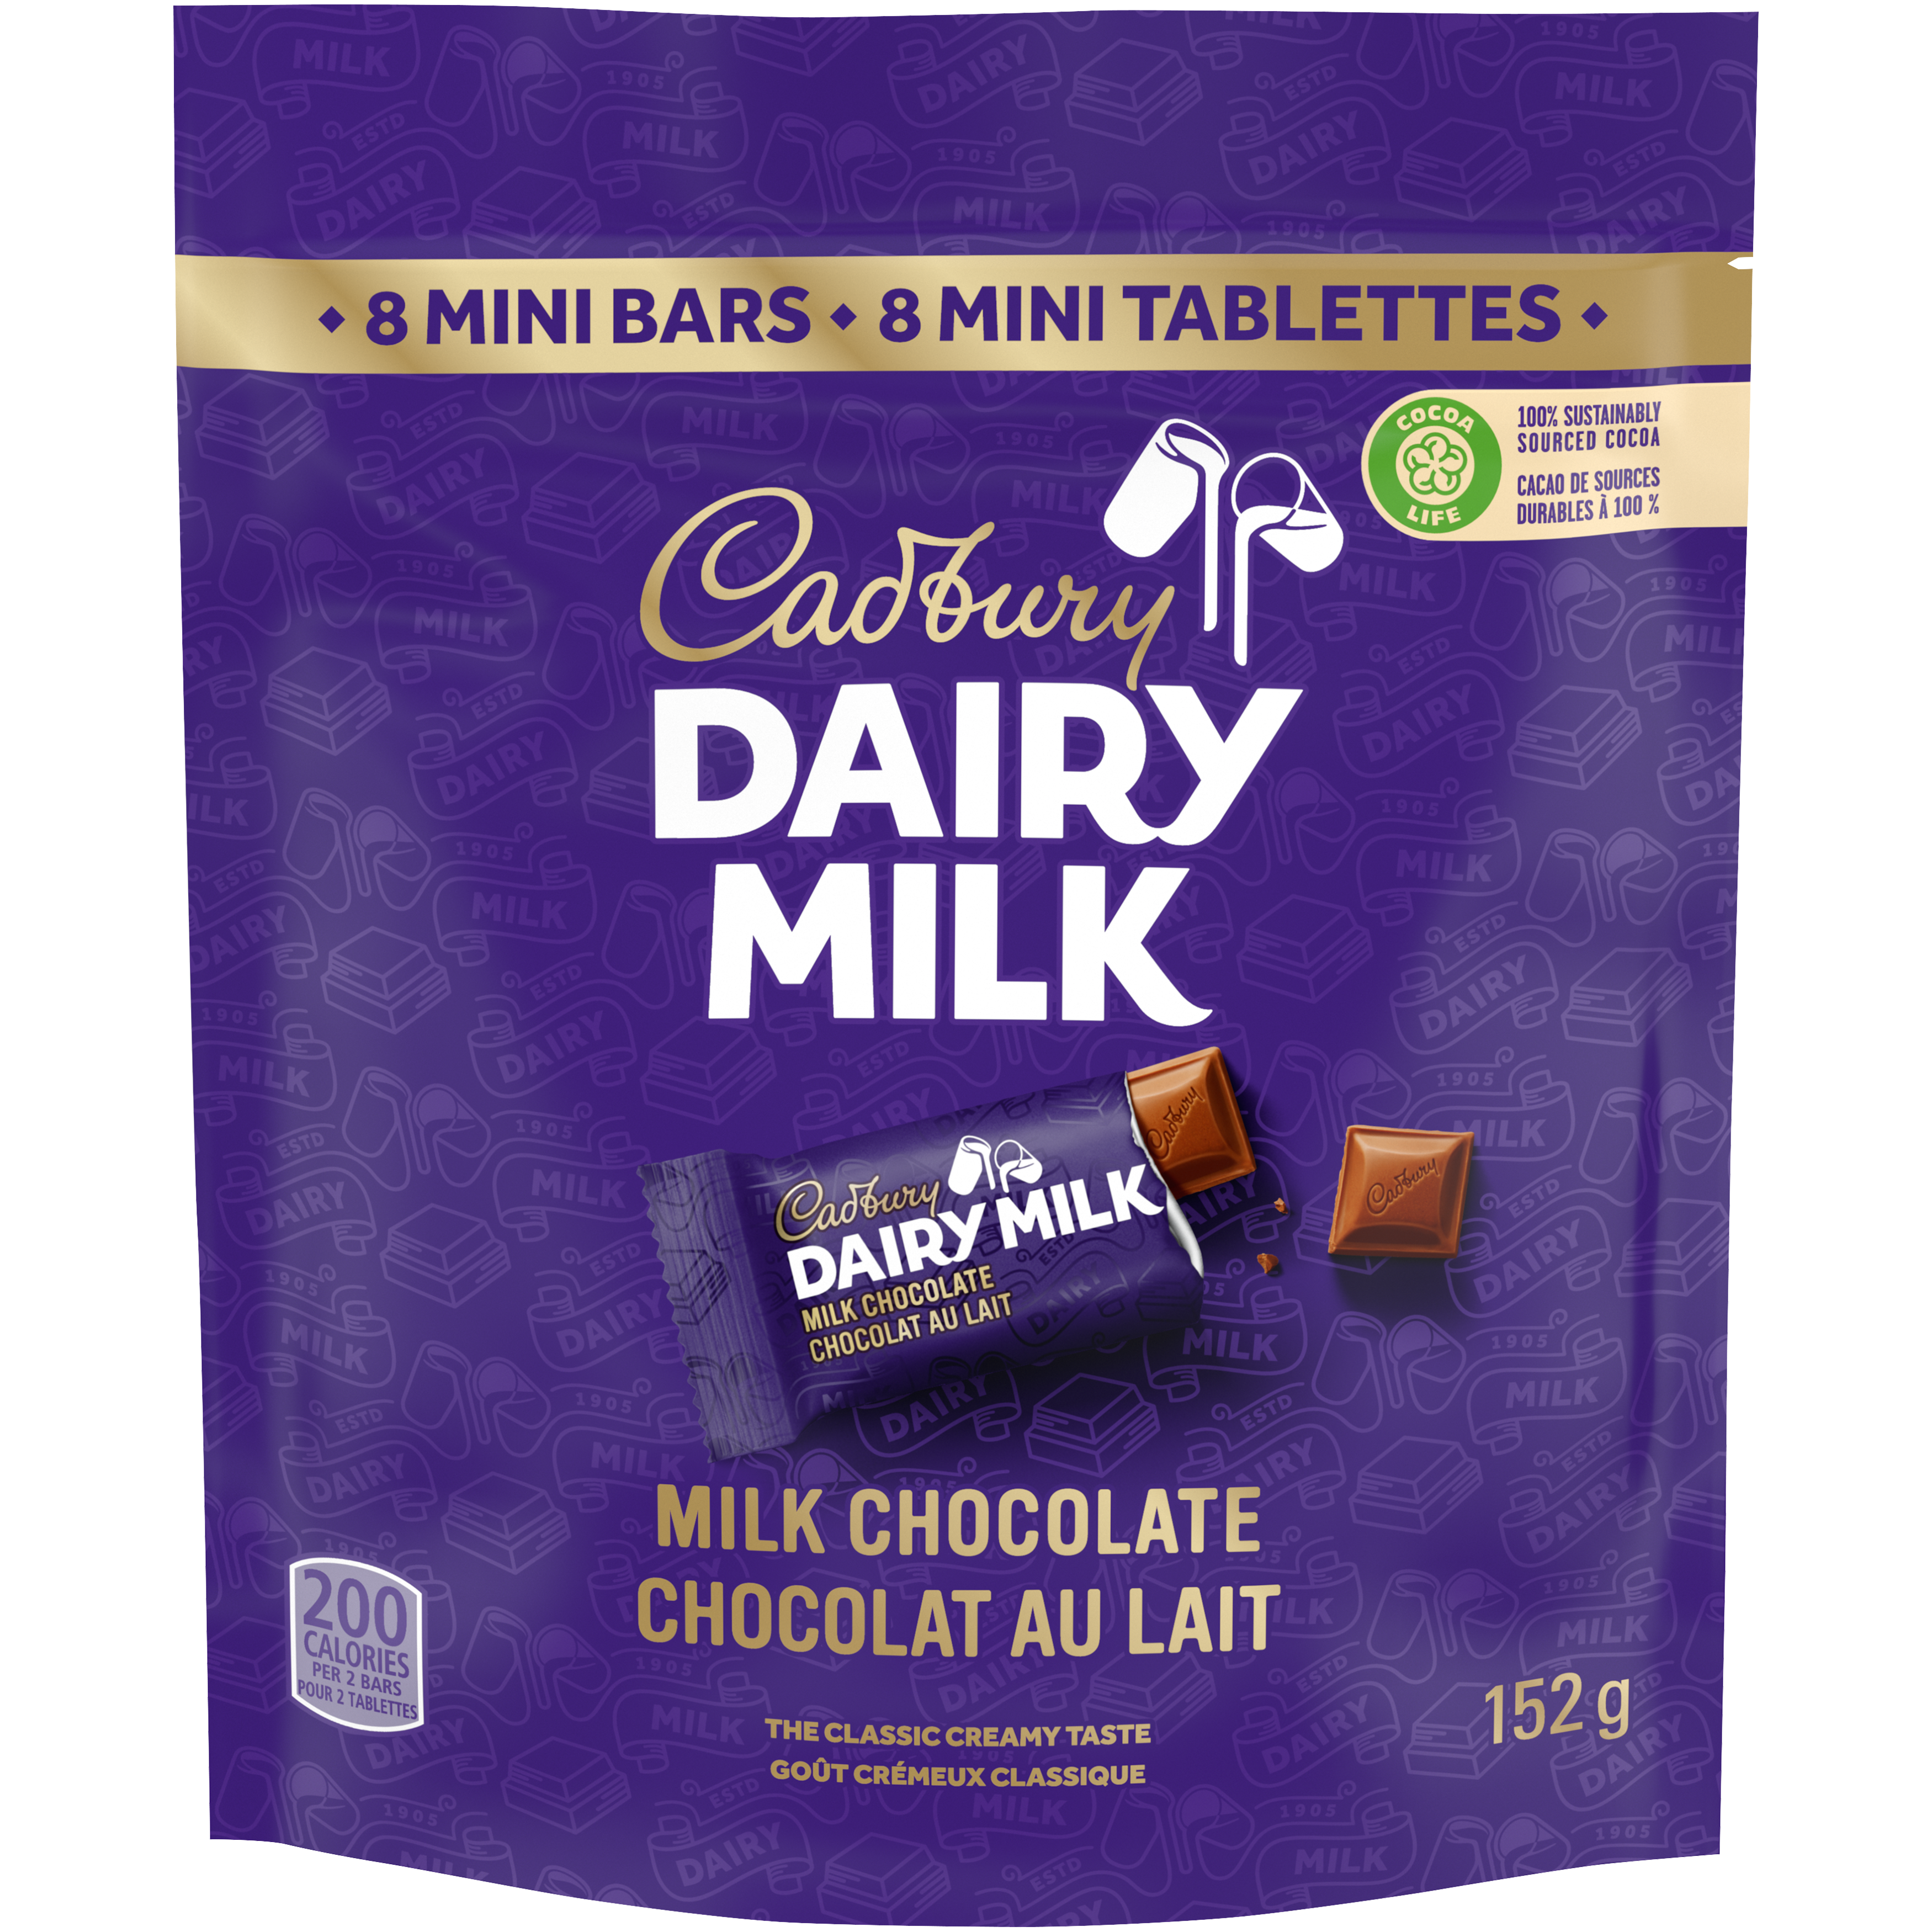 Cadbury Dairy Milk, Milk Chocolate, Mini Chocolate Bars, 8 count, 152 g